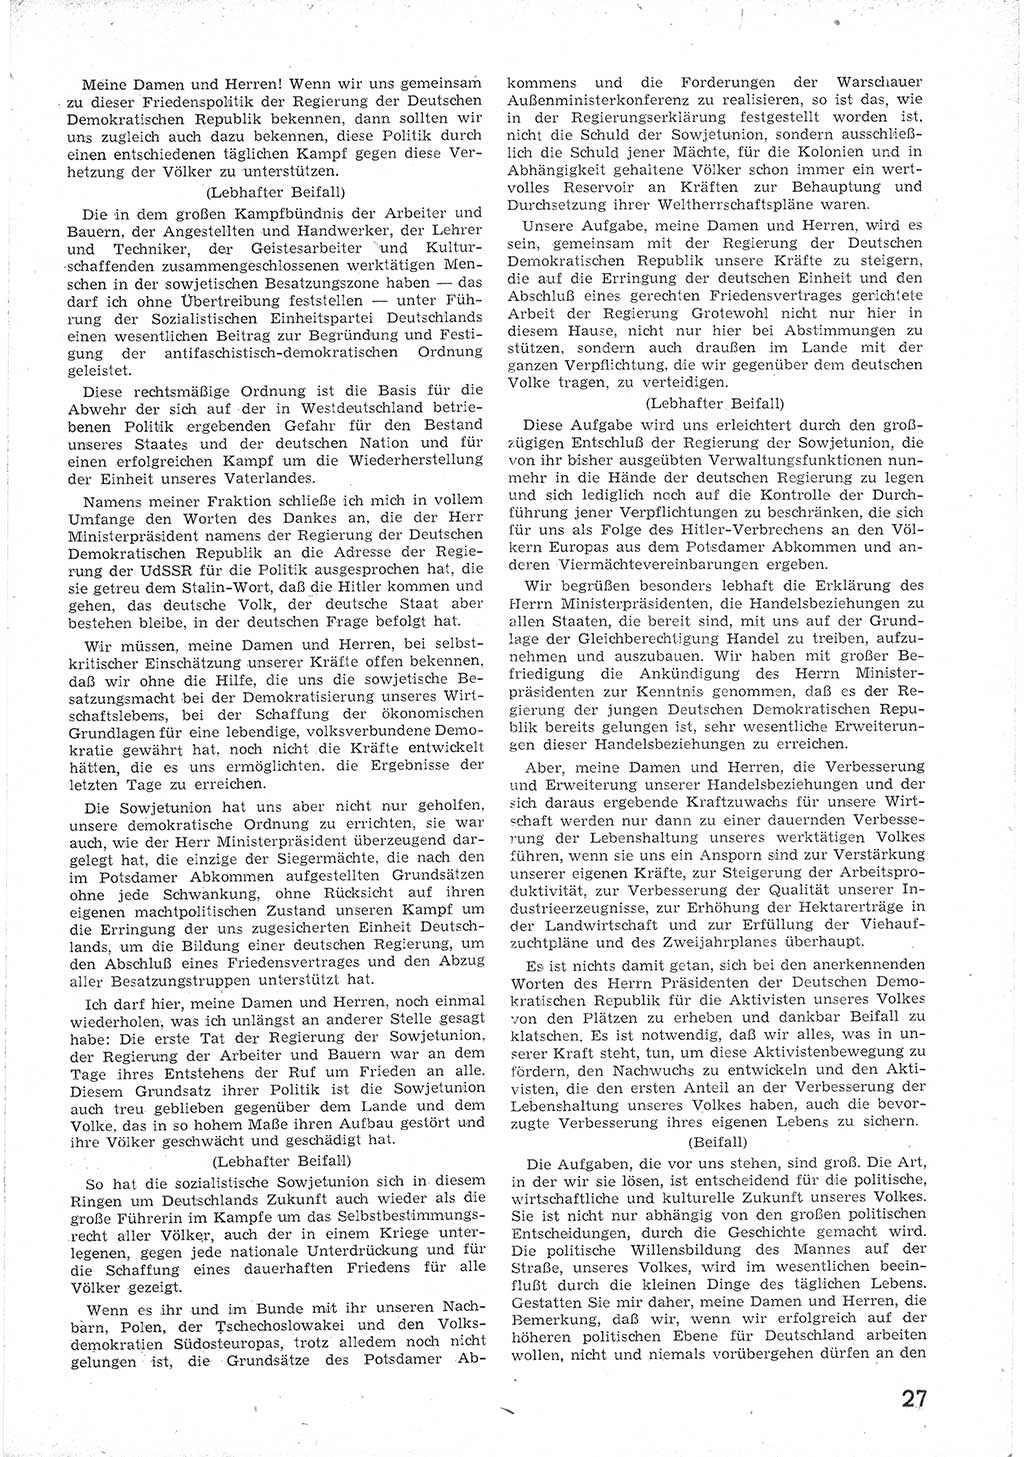 Provisorische Volkskammer (VK) der Deutschen Demokratischen Republik (DDR) 1949-1950, Dokument 39 (Prov. VK DDR 1949-1950, Dok. 39)